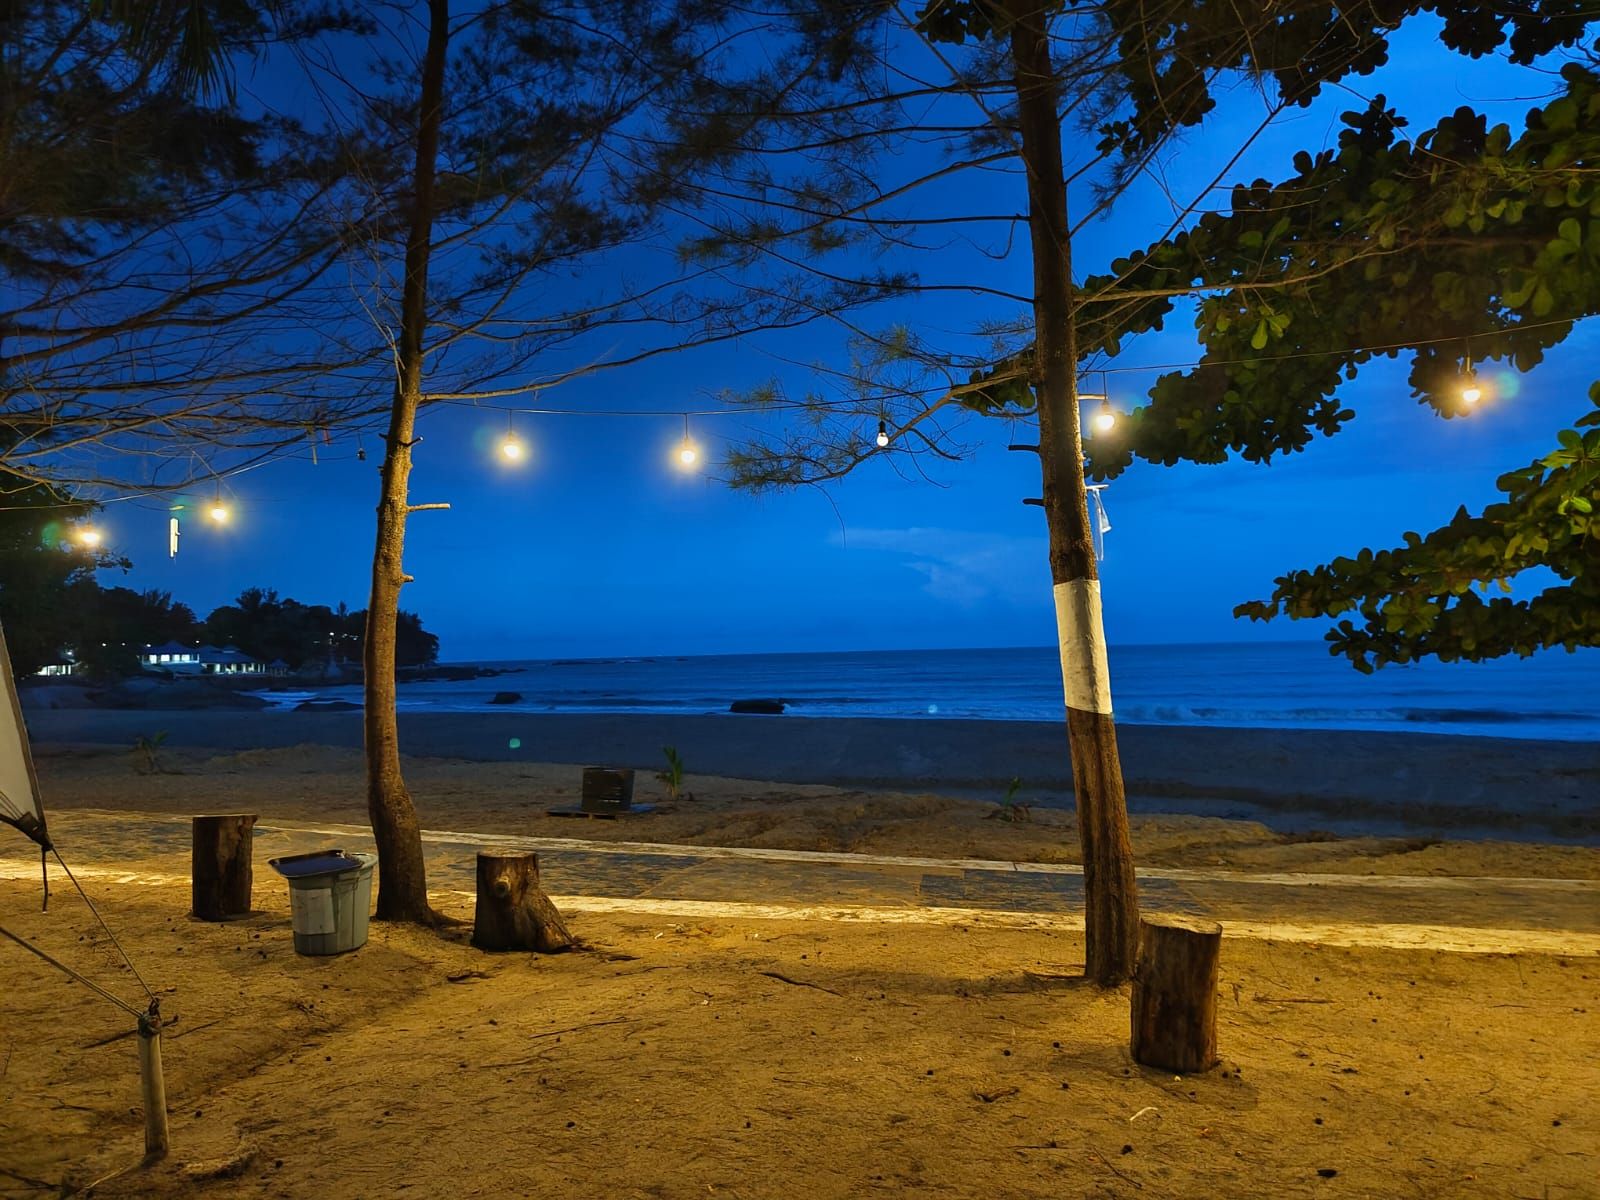 Pemandangan malam hari di depan tenda Glamping Pesona Bay